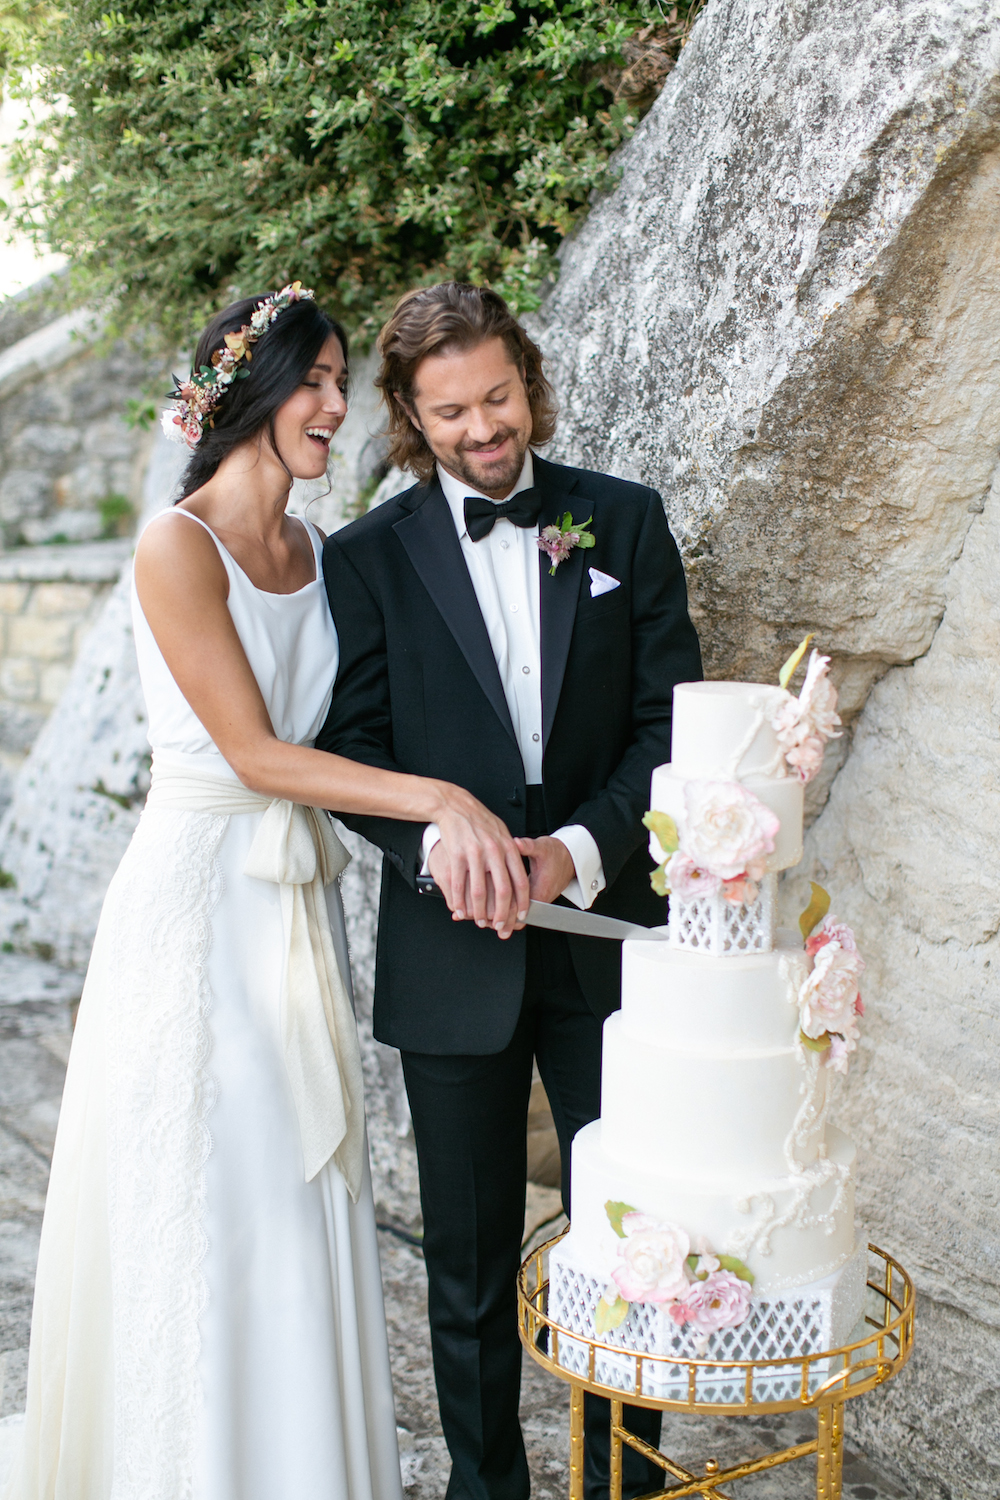 couple cutting wedding cake in Tuscany